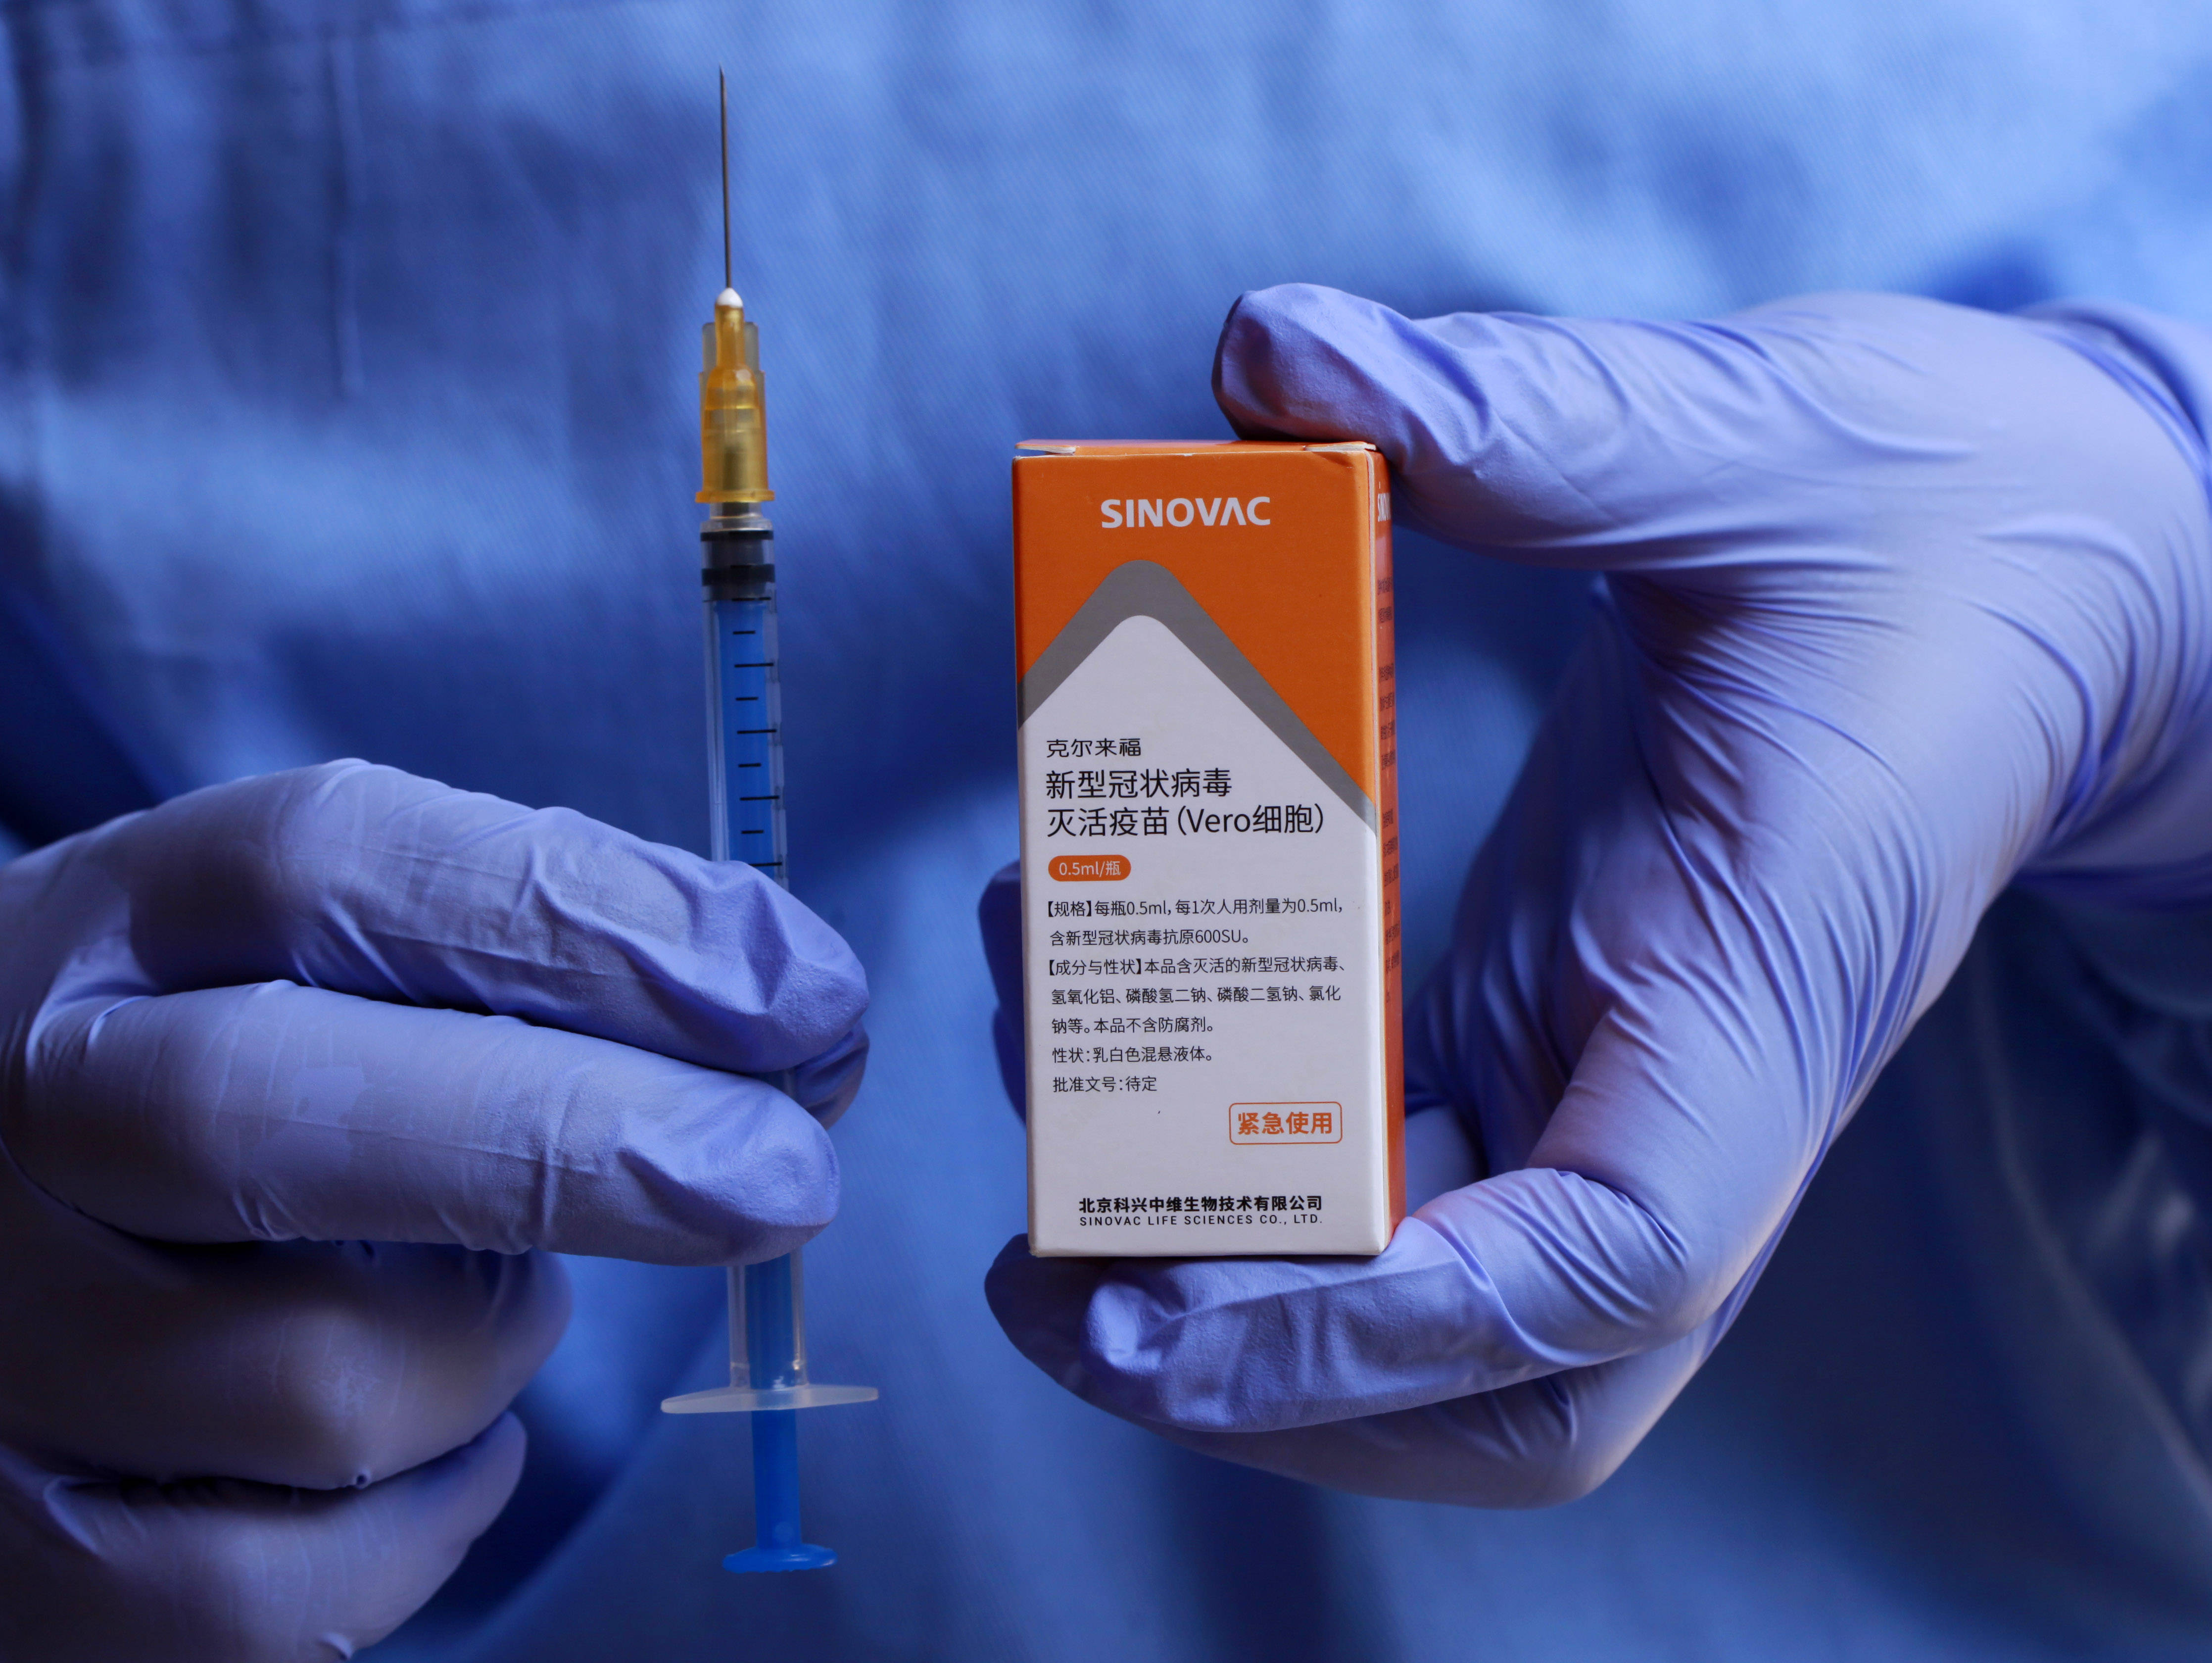 科兴新冠疫苗包装颜色图片